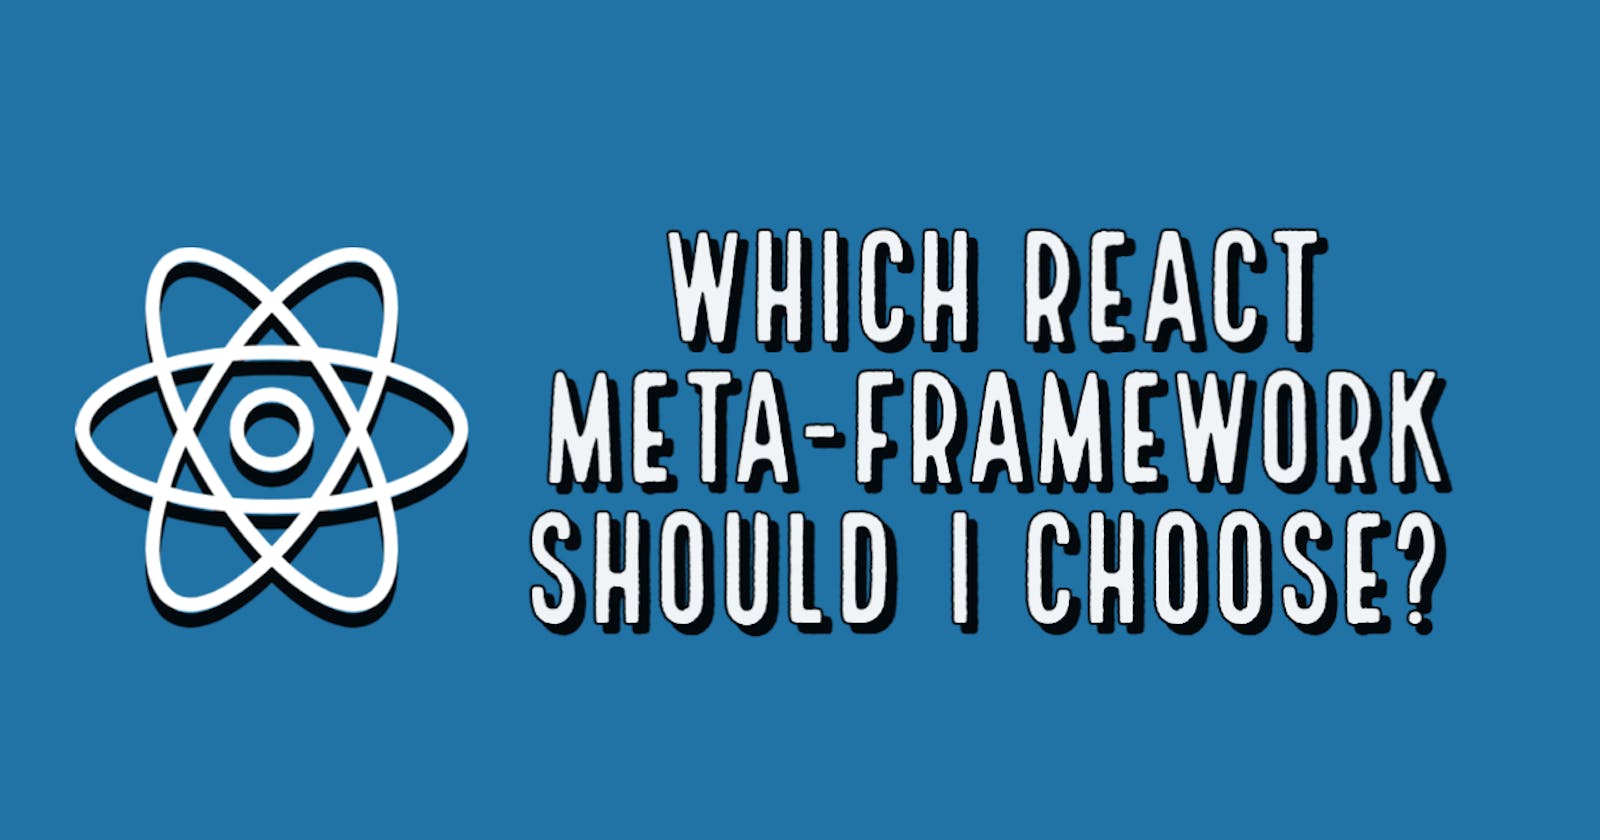 Which React Meta-Framework Should I Choose?